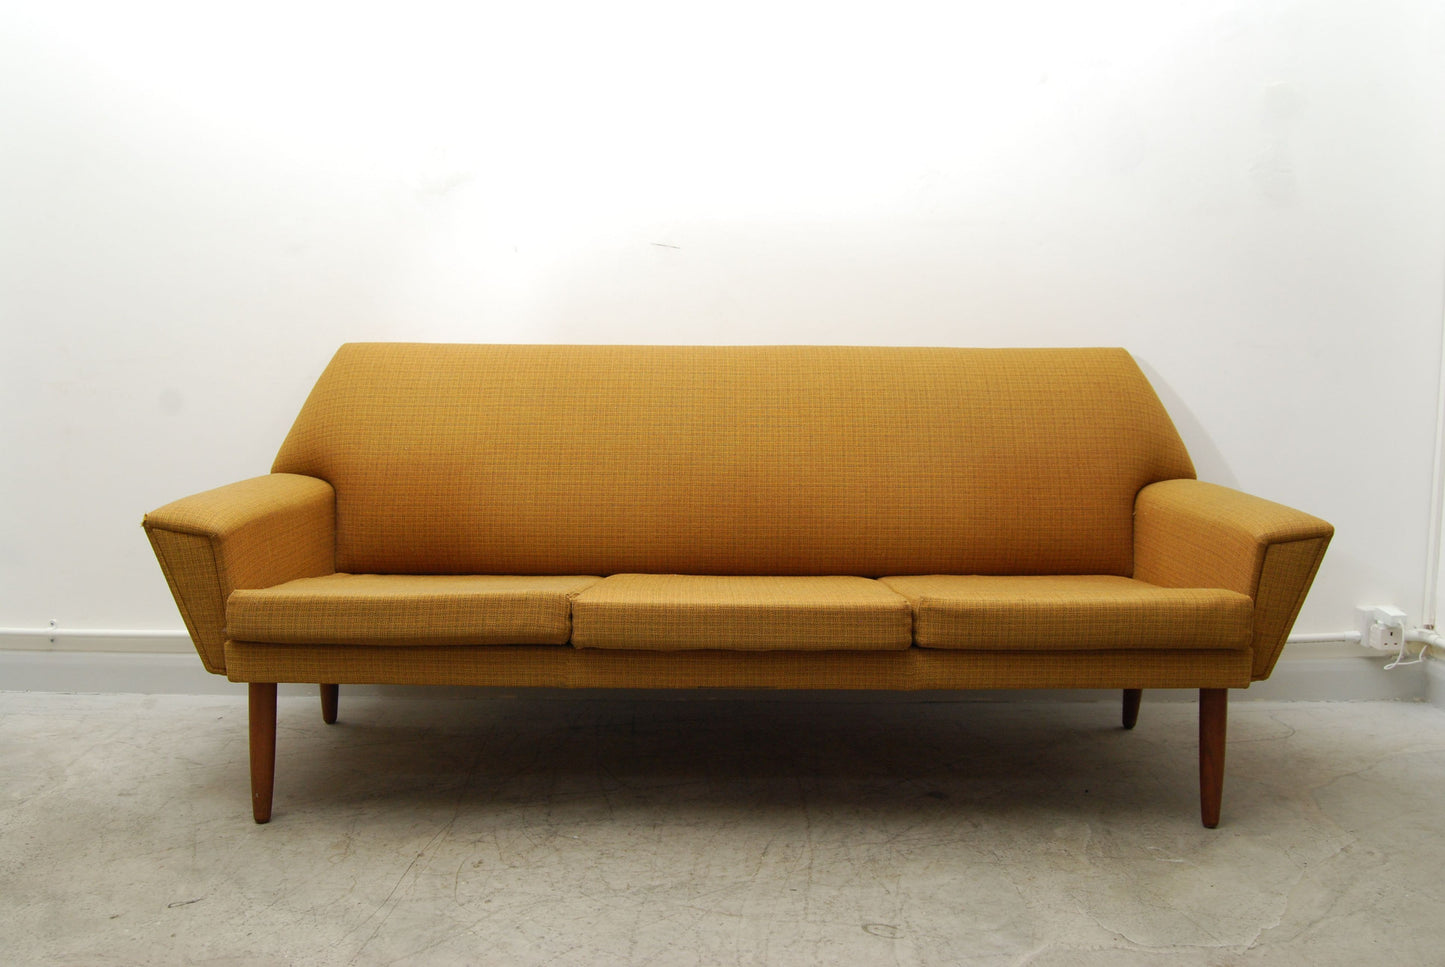 Three seat sofa in mustard yellow